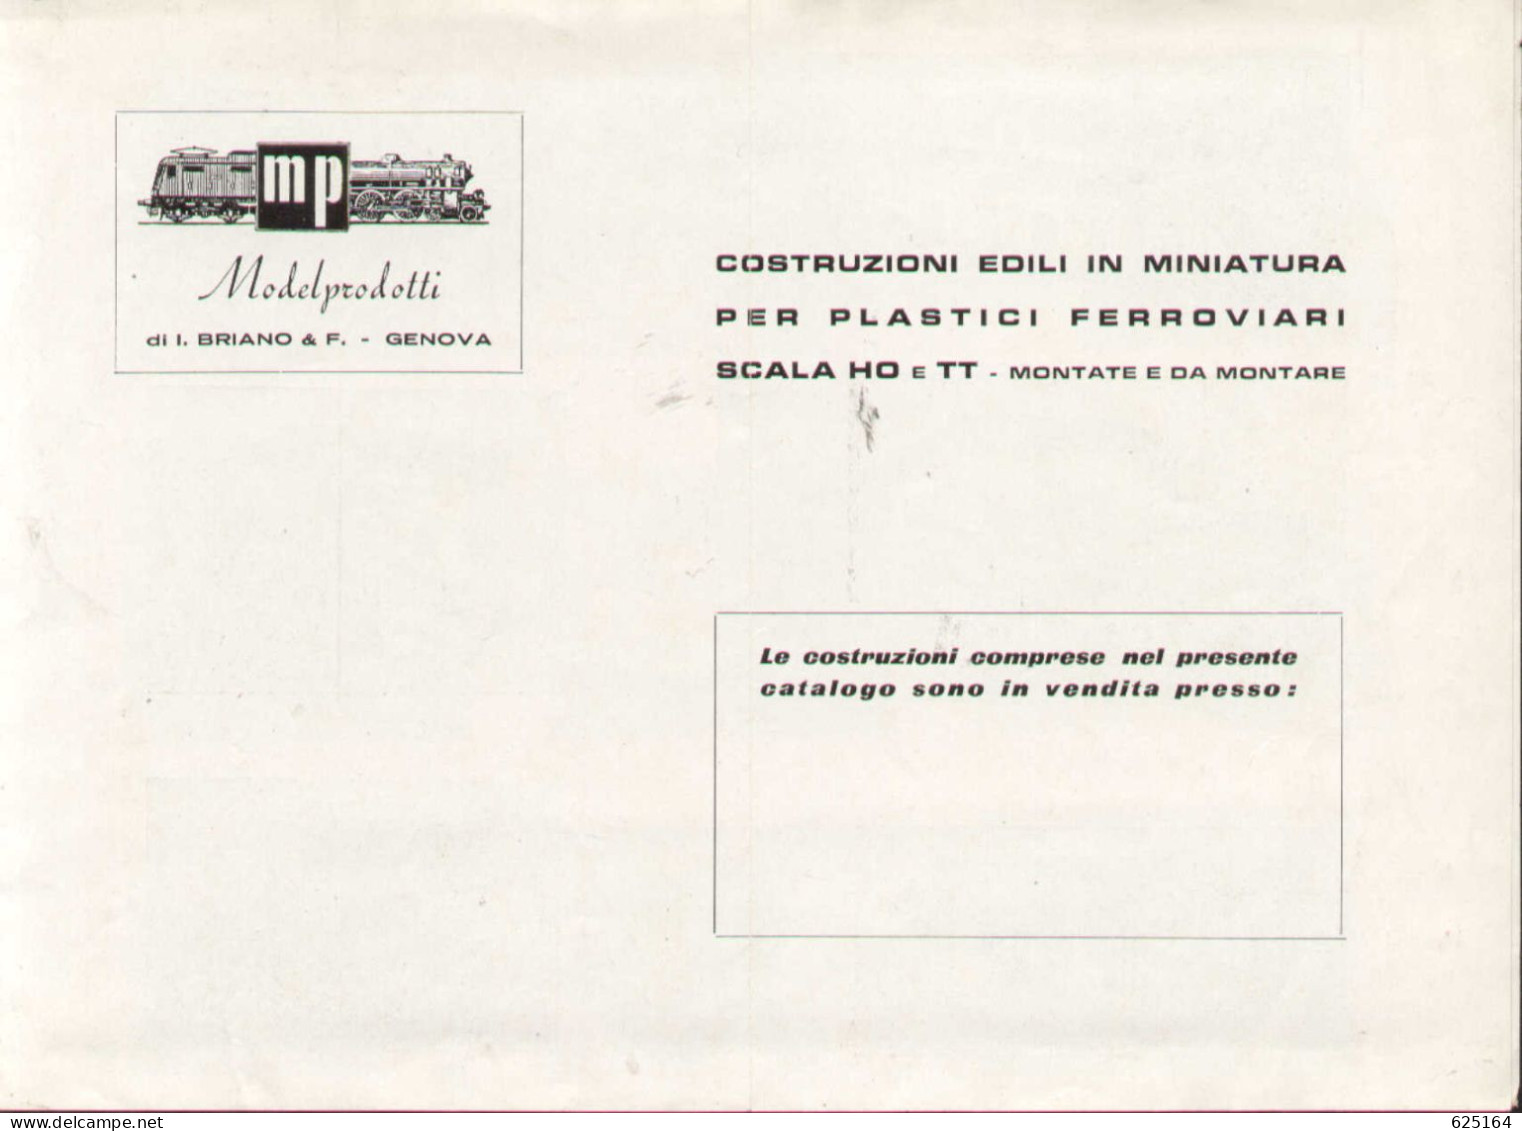 Catalogue MP ModelProdotti 1959? Ed. Italo Briano Genova Accessori HO - En Italien - Zonder Classificatie